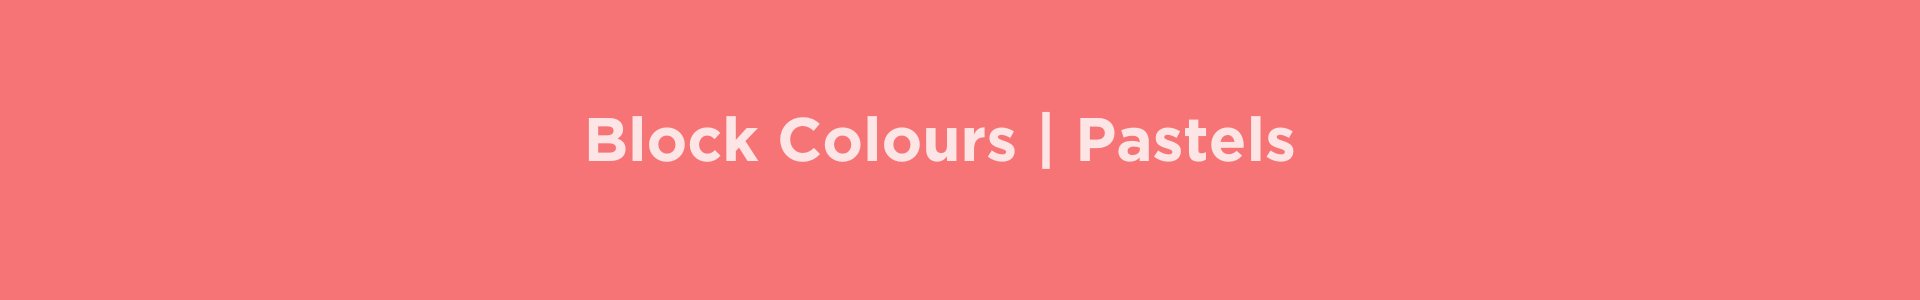 Block Colour | Pastels